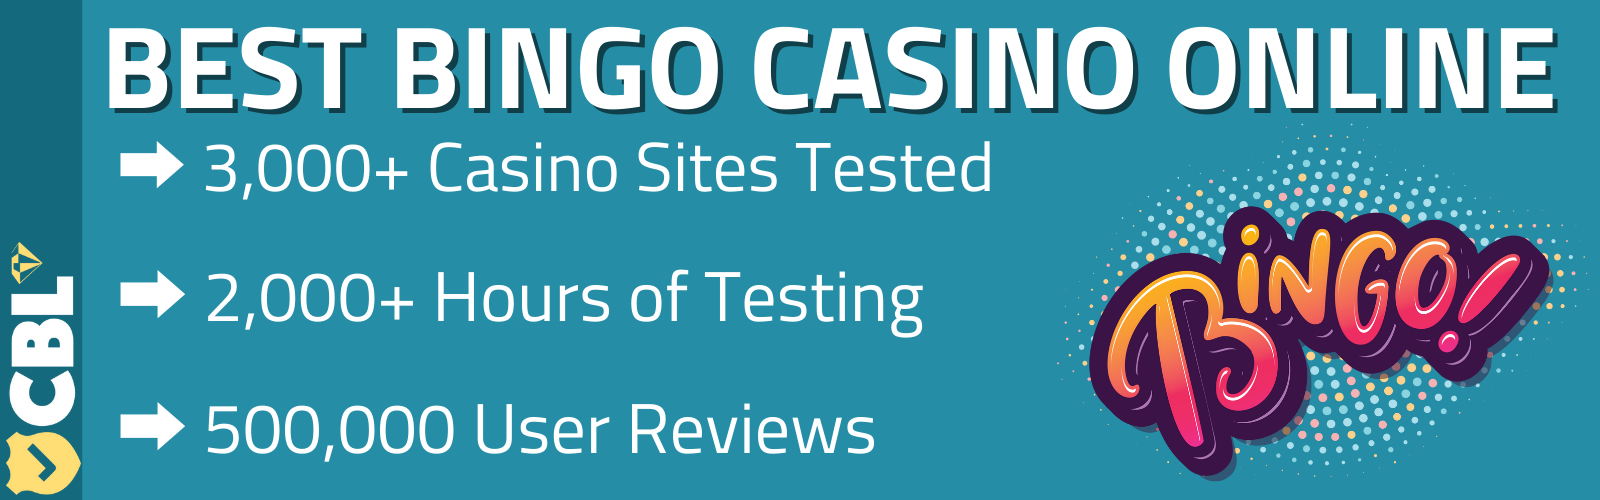 bingo casino online (1)